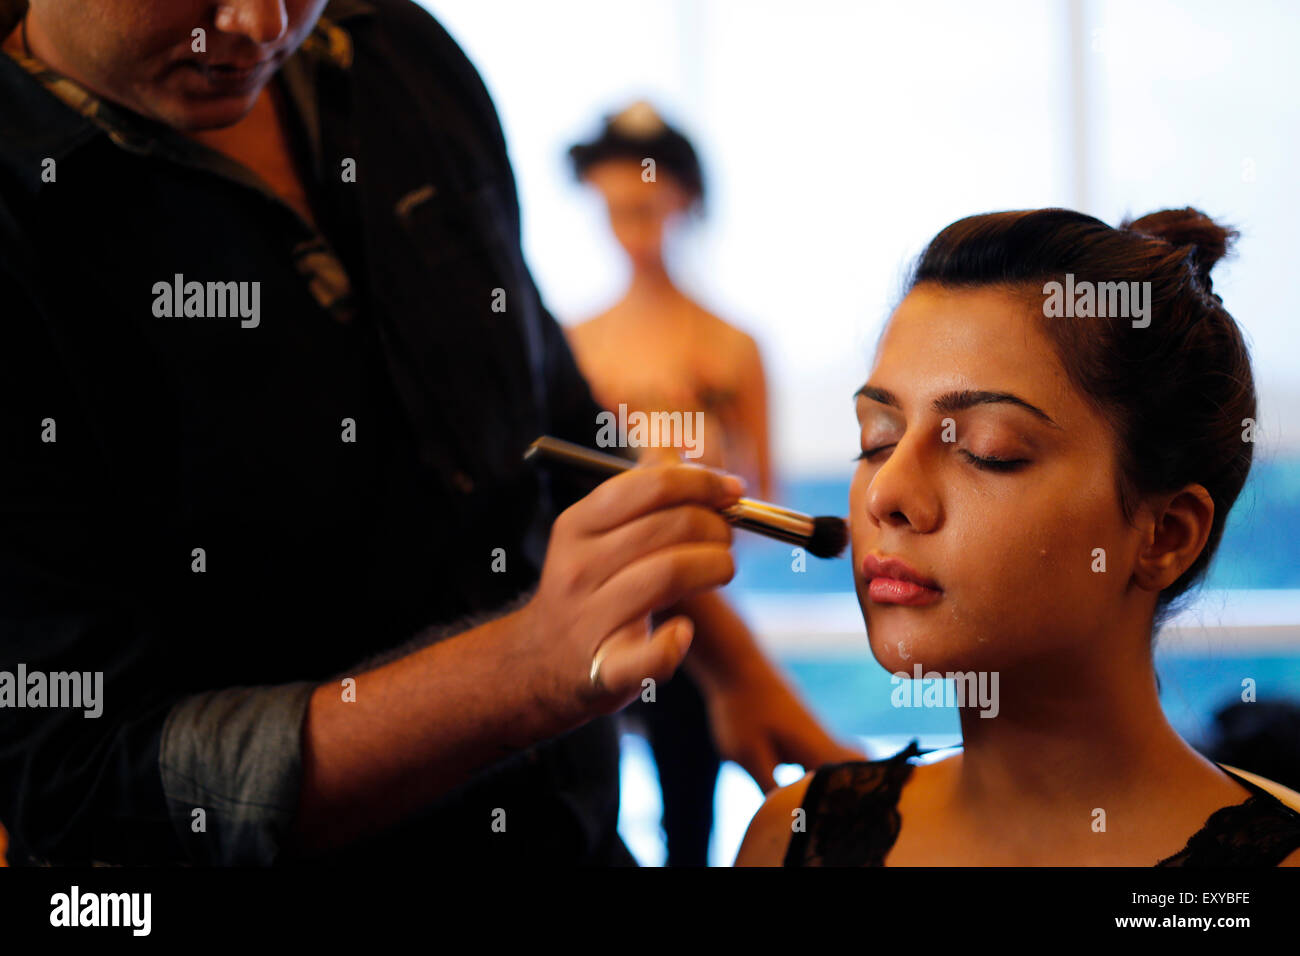 L'artiste de maquillage maquillage s'applique à un modèle dans la salle de maquillage Backstage avant le début de la fashion show Banque D'Images